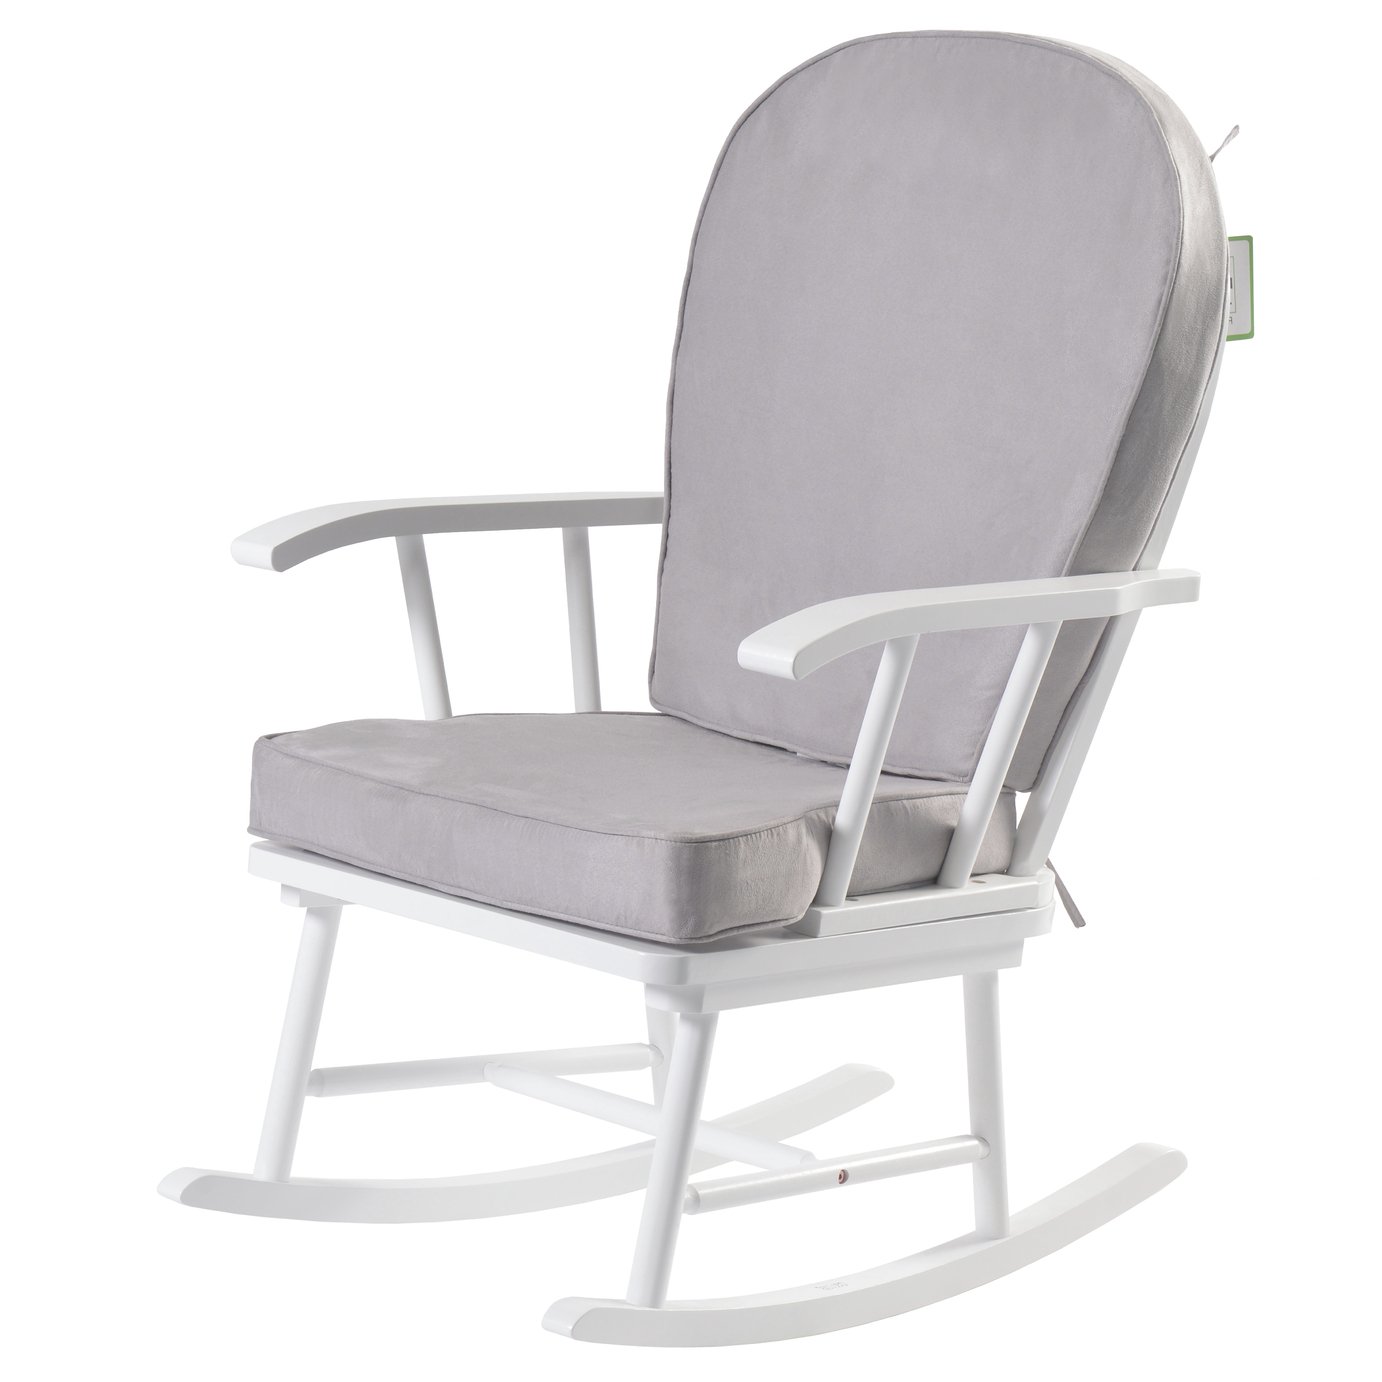 Kub Hart Nursing Rocking Chair Review